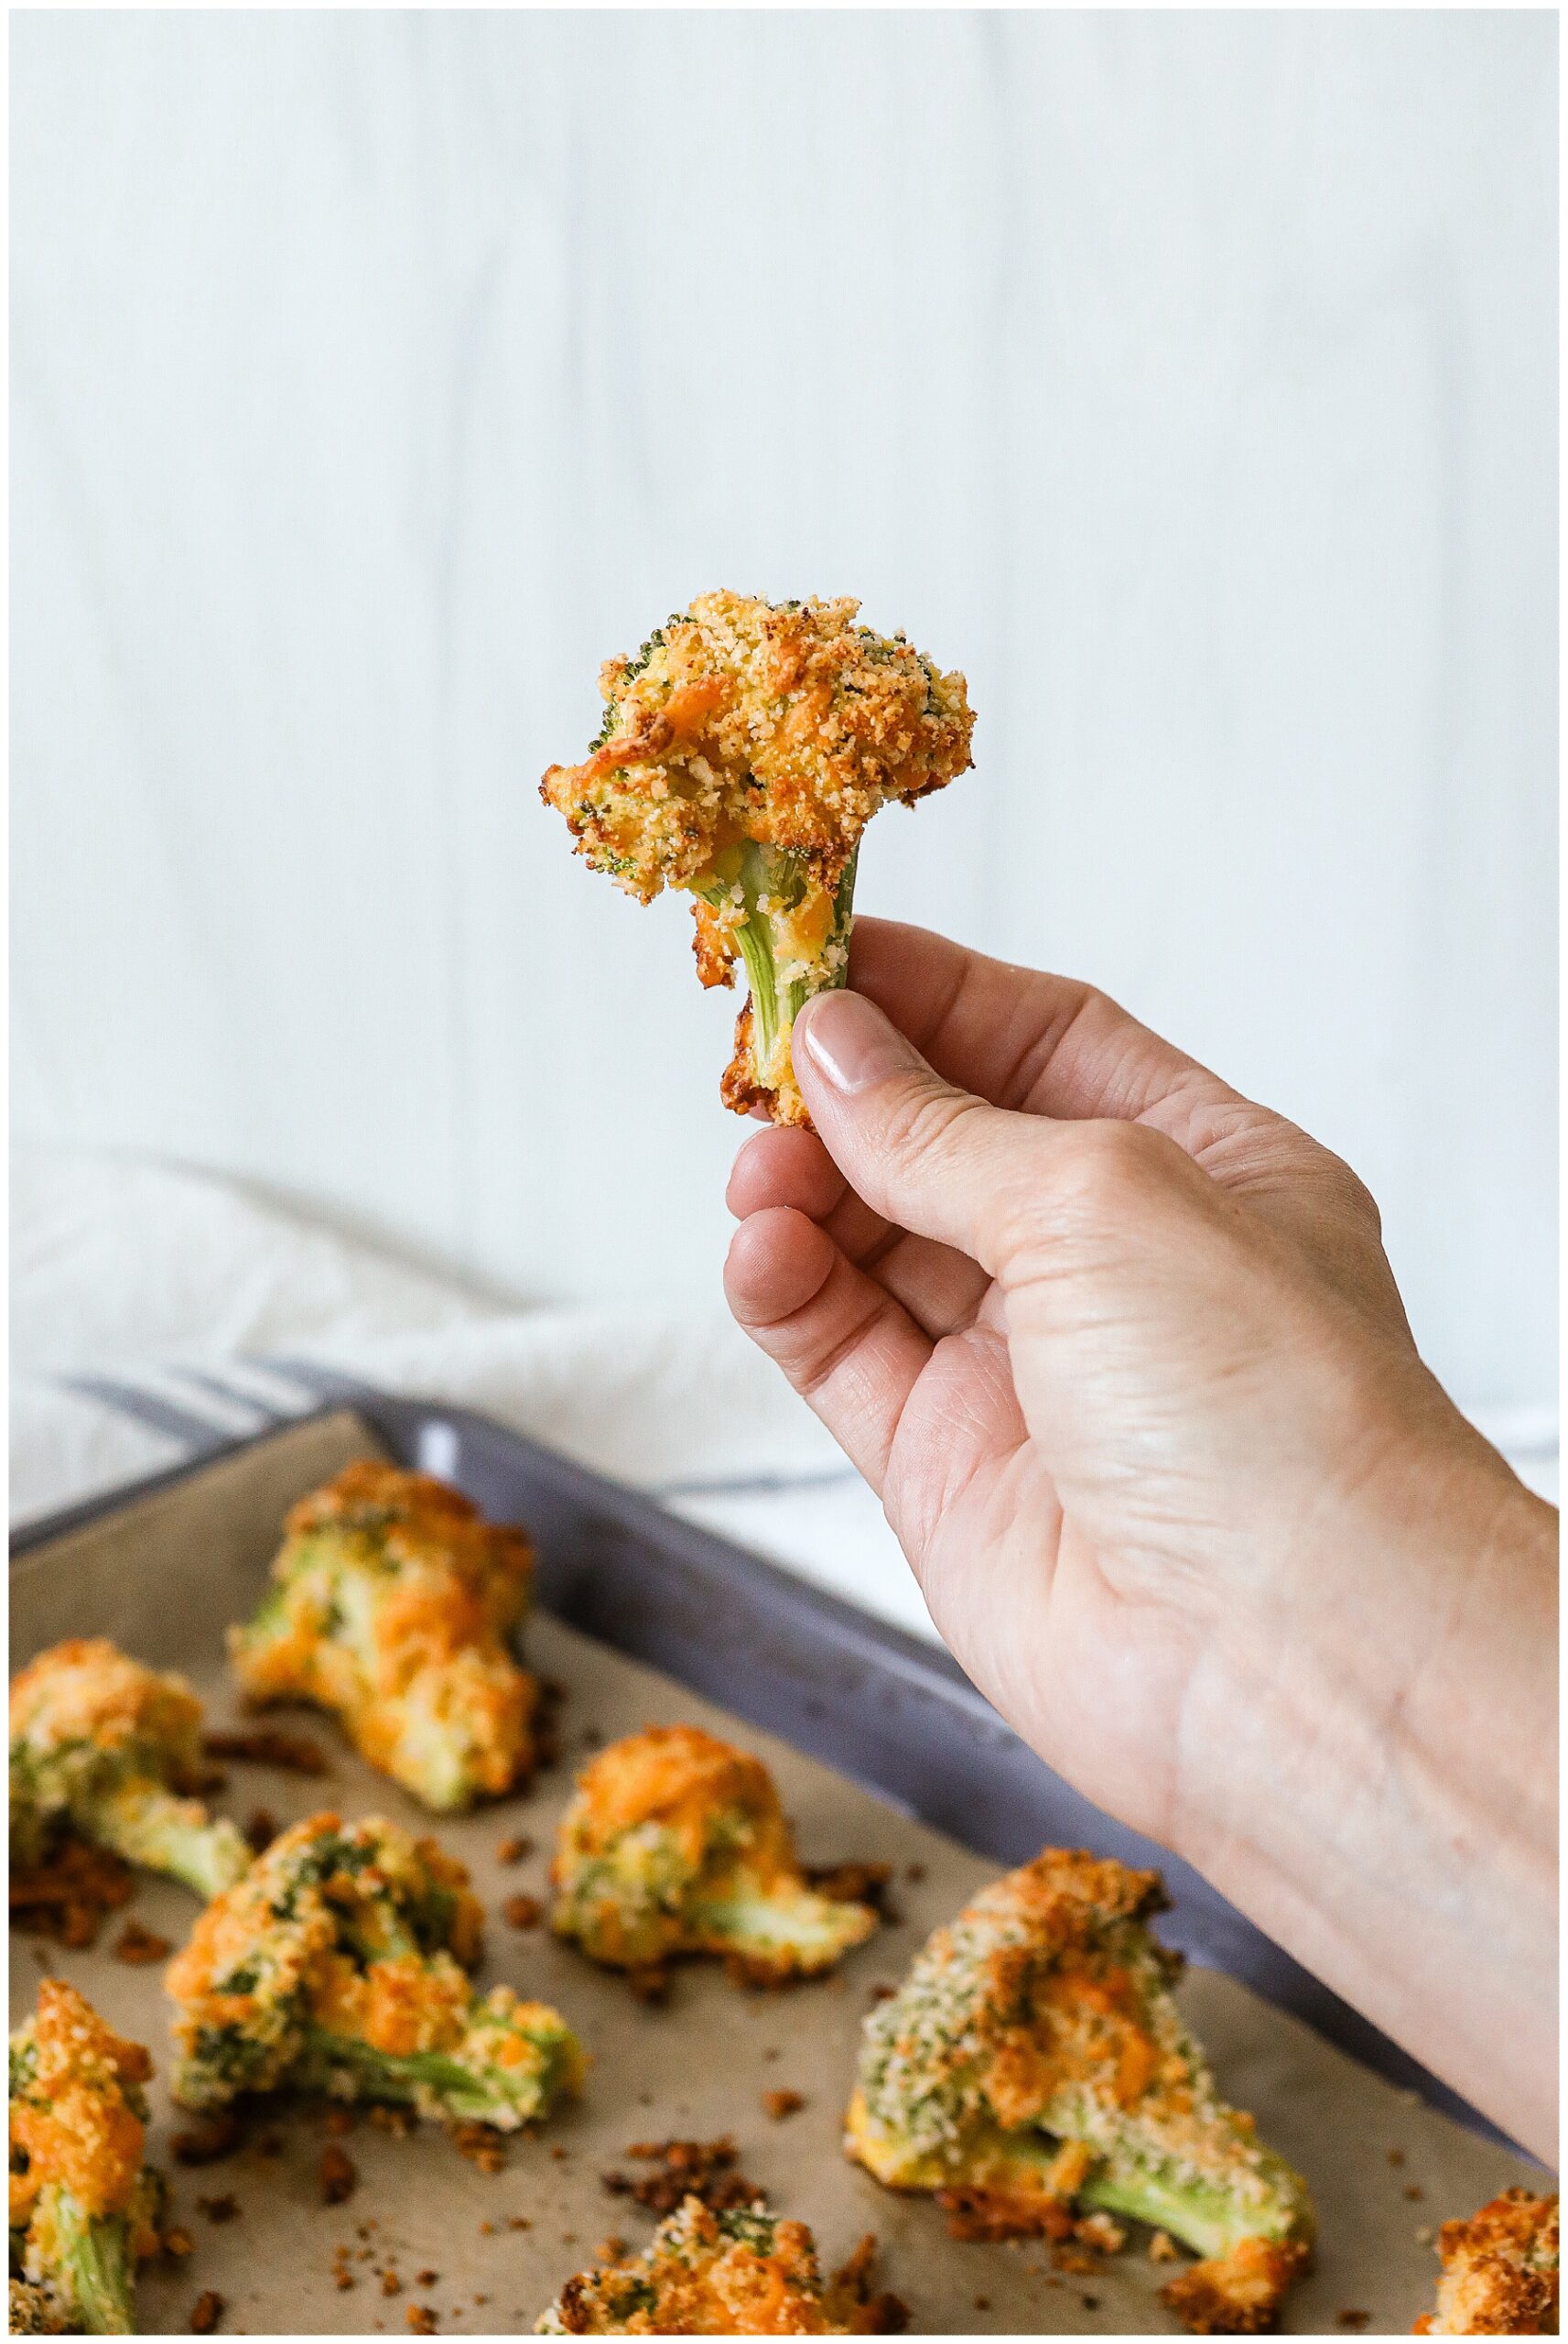 Breaded Broccoli Bites